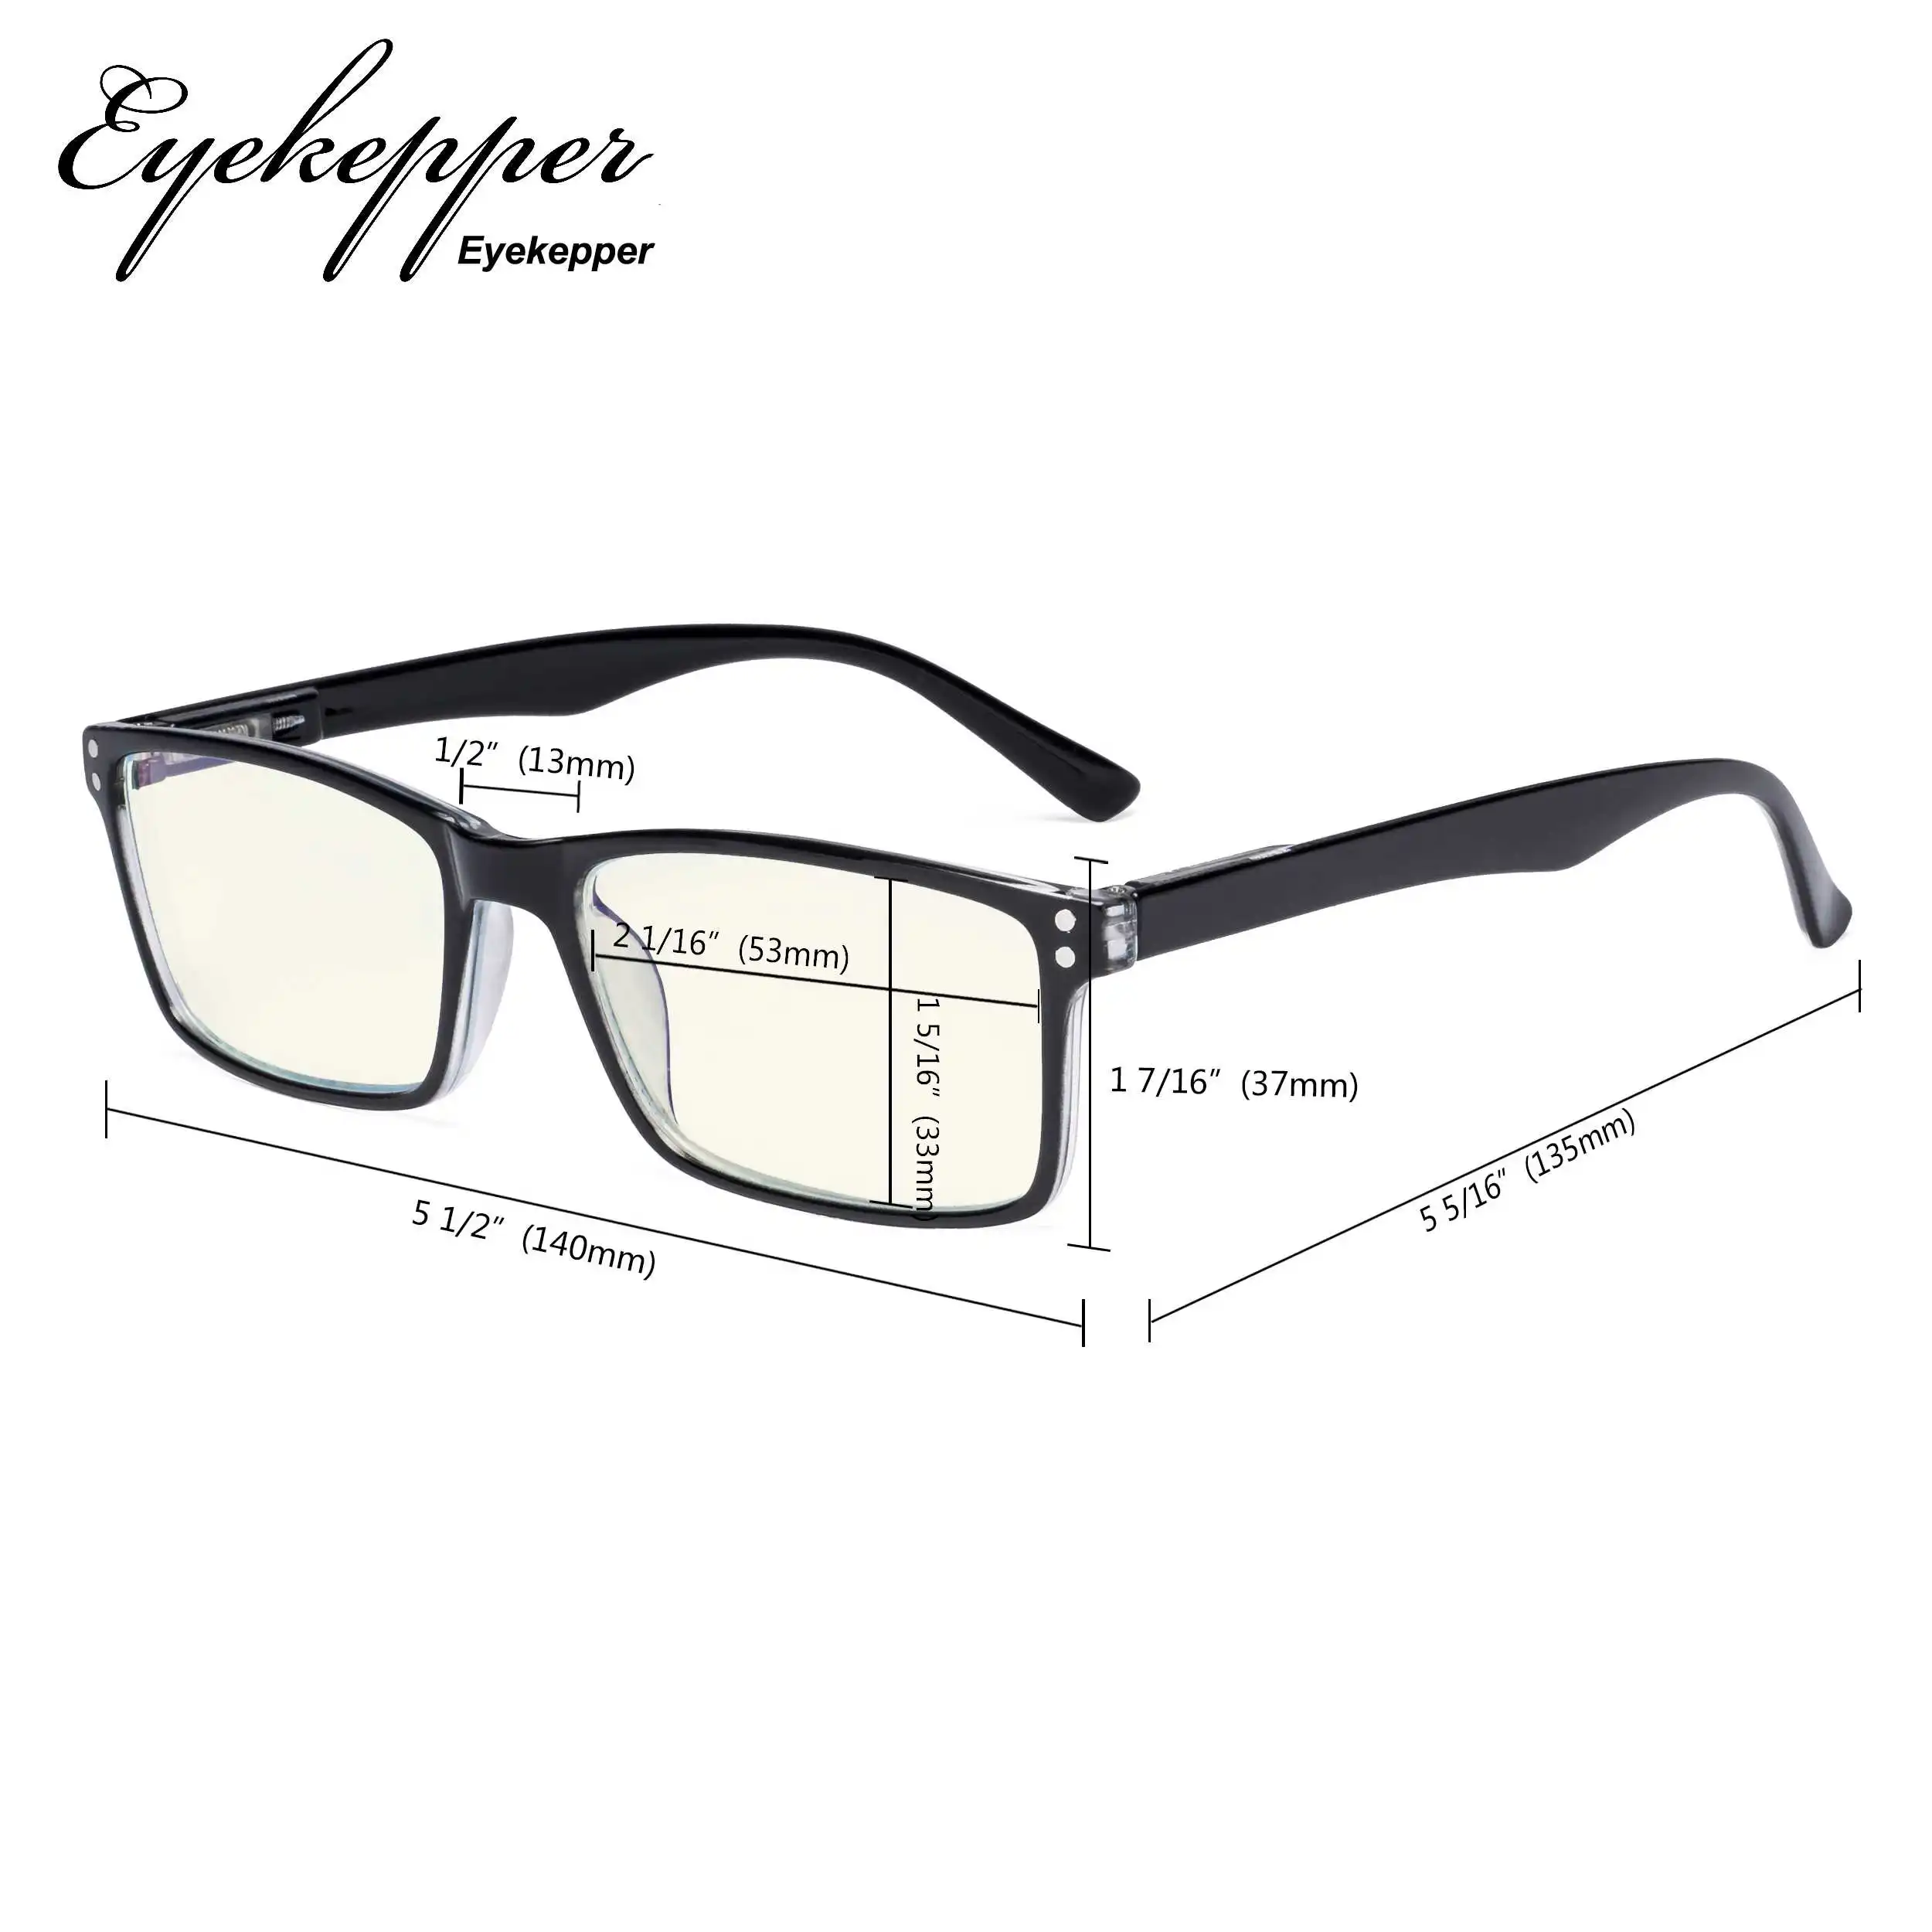 UVR802 Eyekepper компьютерные очки-синий светильник чтения фильтров-UV420 защита стильное качество пружинные петли очки для чтения